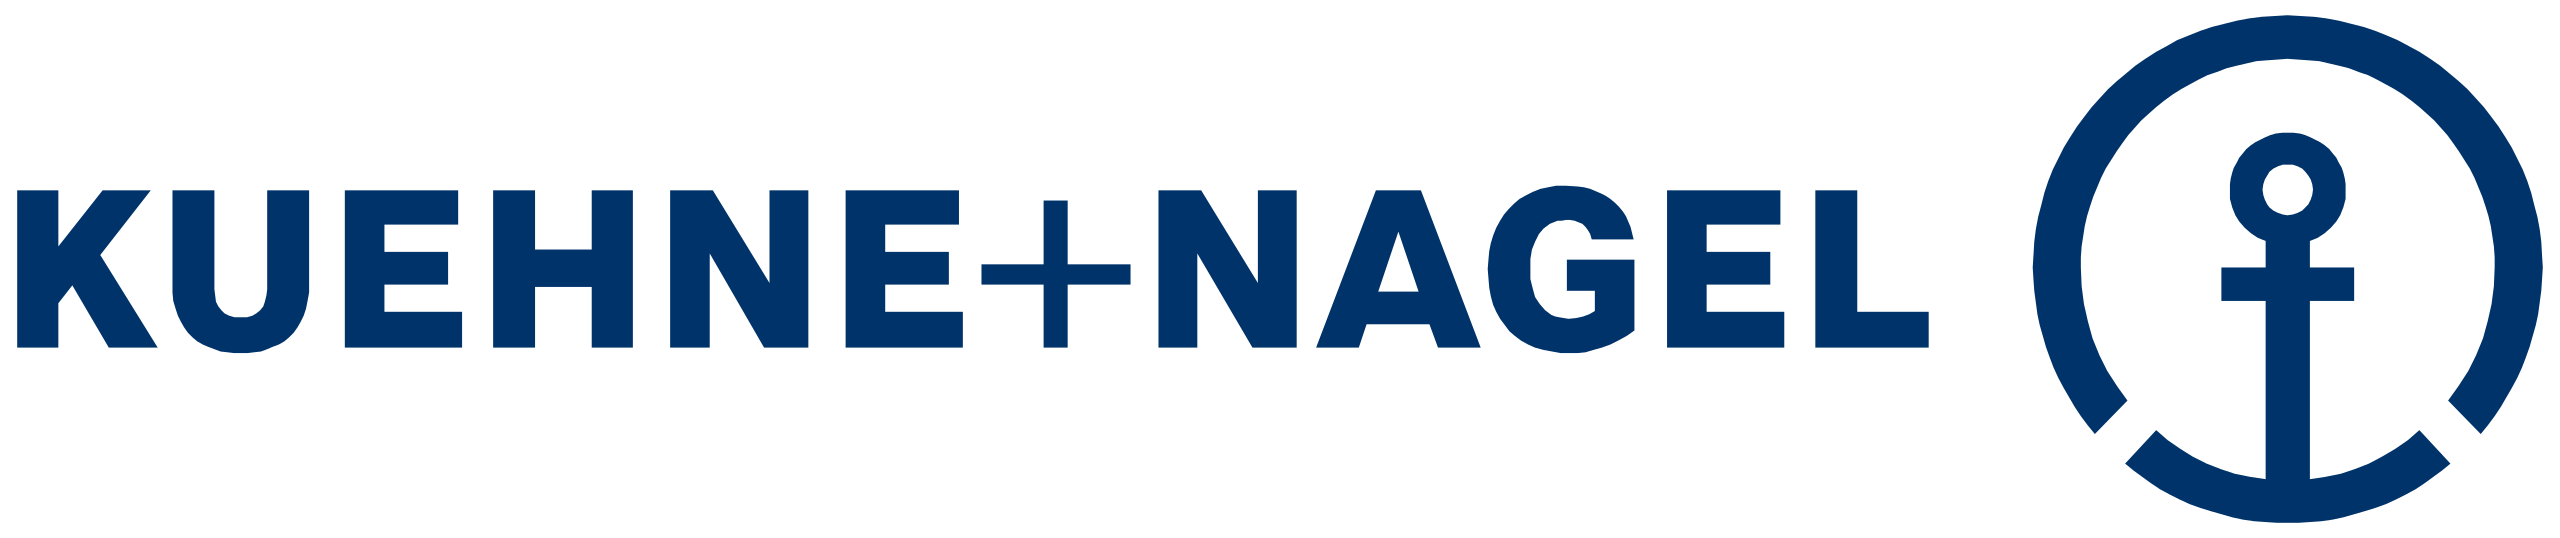 Kühne_+_Nagel_logo.svg